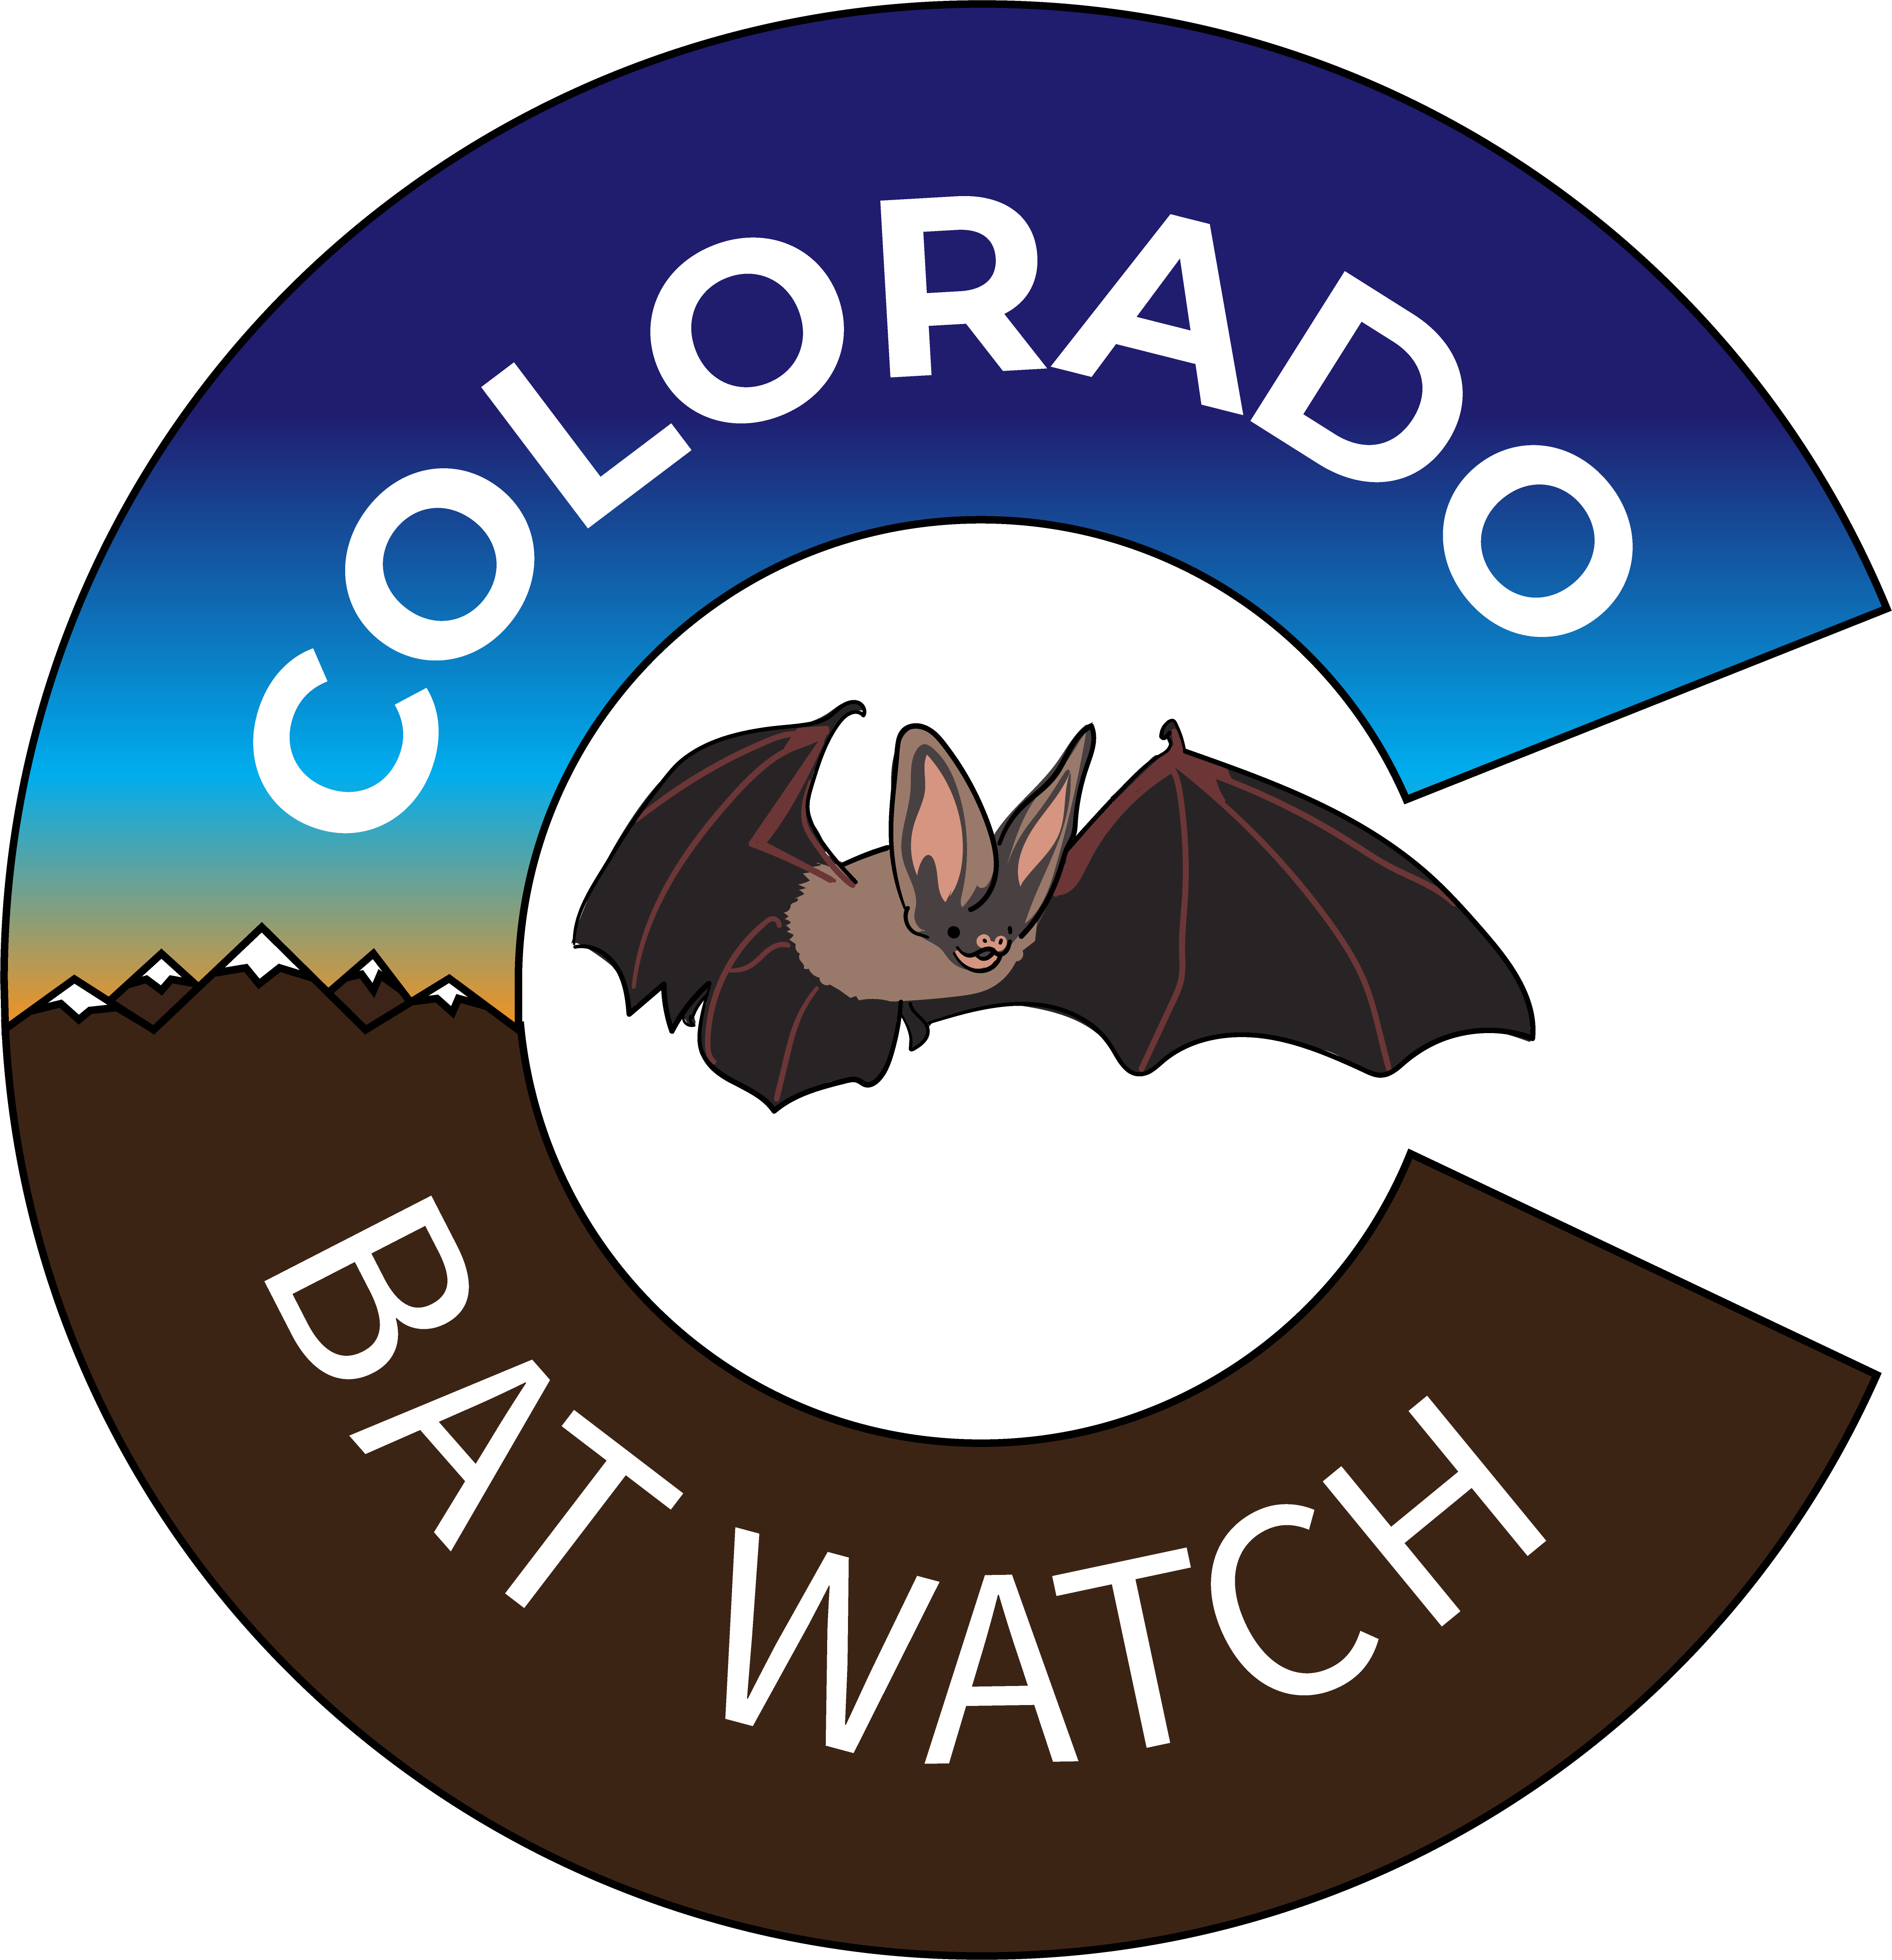 Colorado Bat Watch Logo